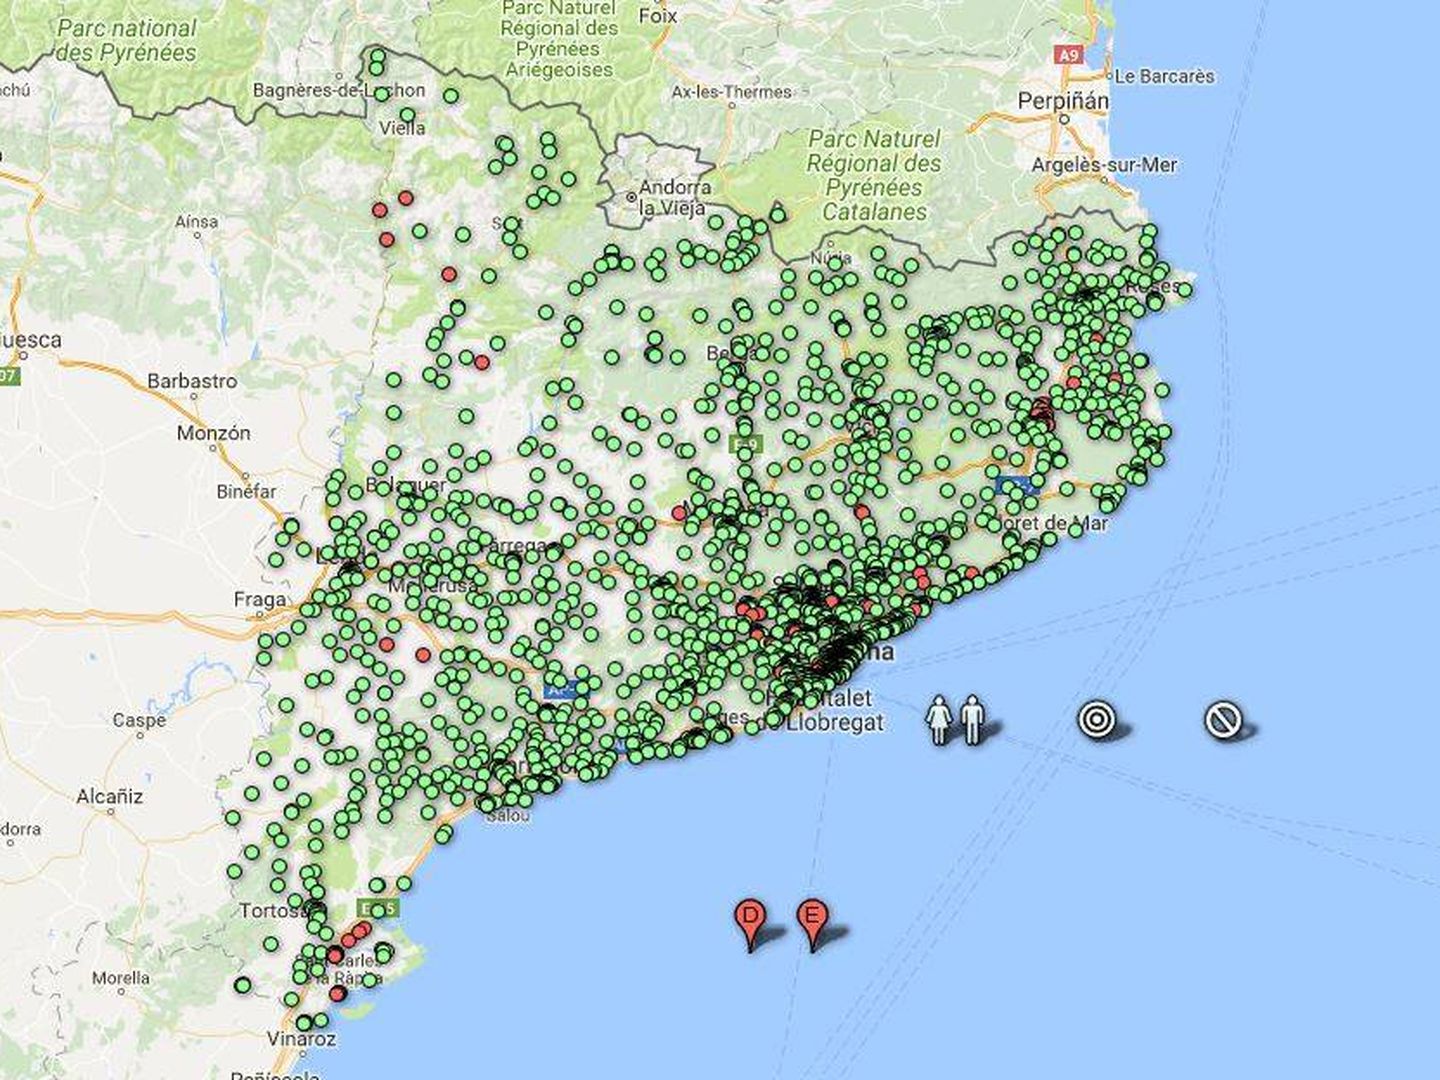 El estado de los colegios en un clon de la web de la Generalitat. En rojo, los colegios cerrados o que no pudieron abrir.